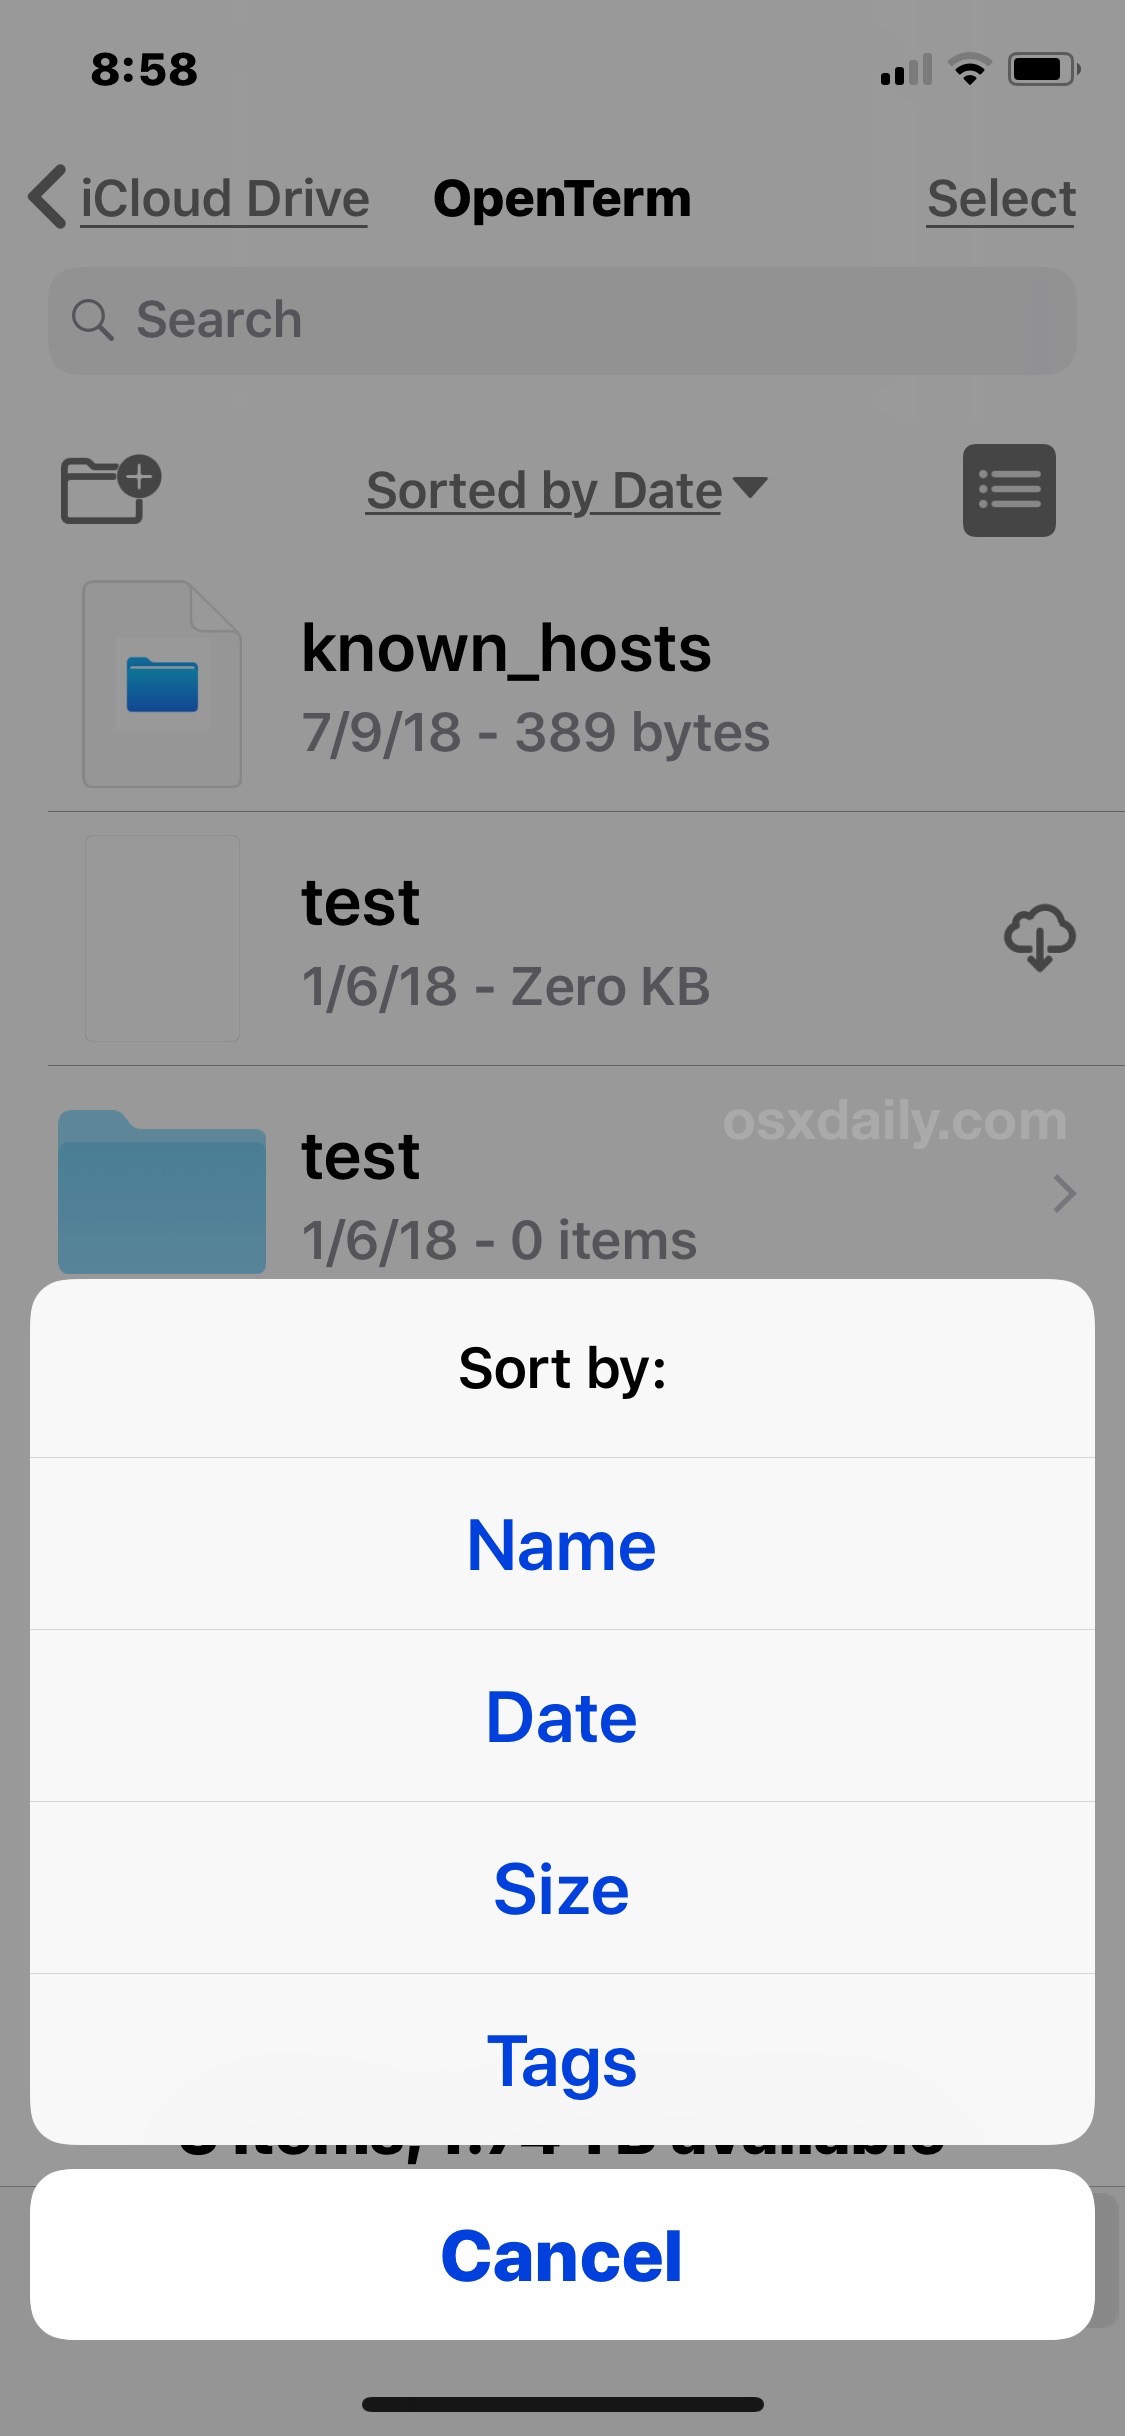 文件应用上的文件排序选项手机” />    <!--</ol-->
<p>无论您选择哪种排序方式，都会在 iPhone 或 iPad 上立即生效，您可以随时通过重复上述步骤并在“文件”应用中选择不同的排序方式来再次更改。</p>
<p>按名称排序或按日期排序对于大多数 iOS 文件应用程序用户来说可能是最有用的排序选项，这两种选项在 Mac 上同样有用和流行。是的，正如大多数 Mac 用户可能知道的那样，<a href=